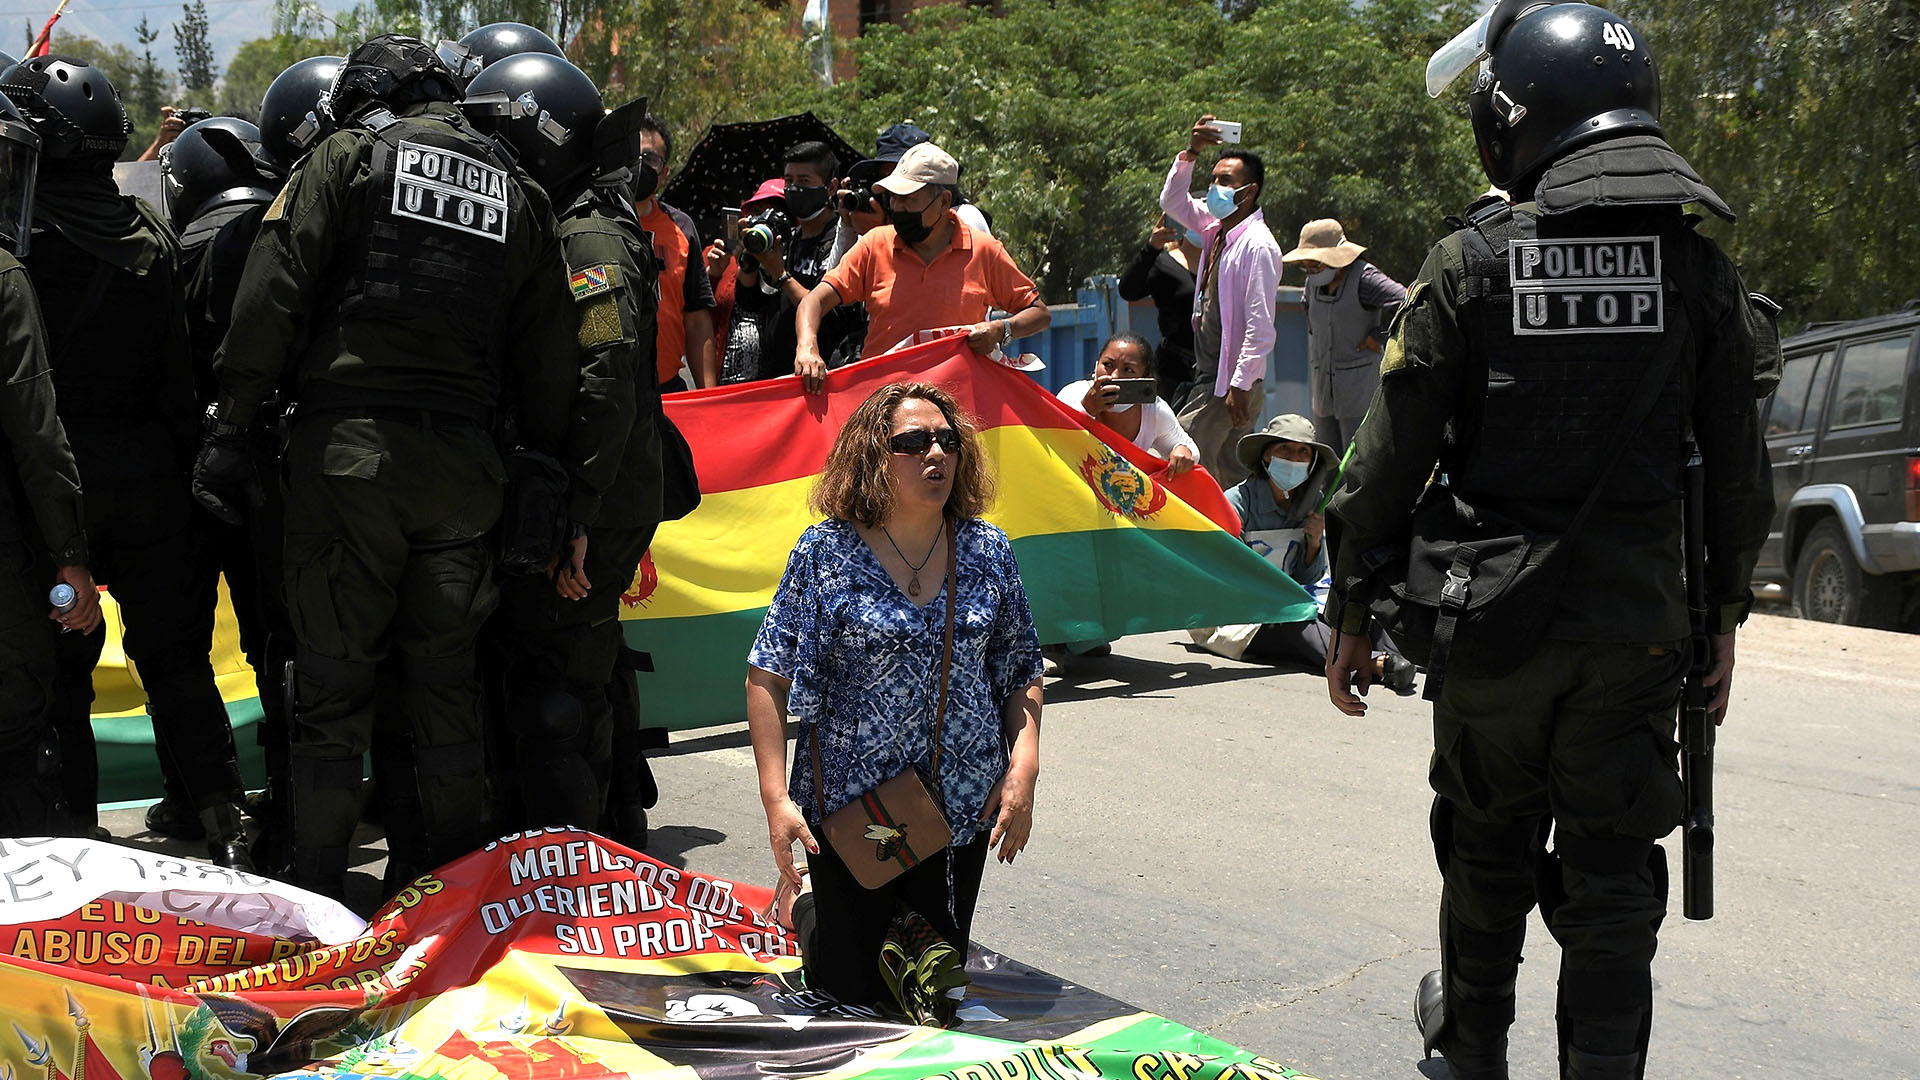 La Policía de Luis Arce y grupos afines al Movimiento al Socialismo (MAS) de Evo Morales intervinieron con violencia los bloqueos callejeros instalados en ciudades como Santa Cruz, Cochabamba y Potosí en el segundo día de una huelga nacional contra una polémica ley (EFE)
